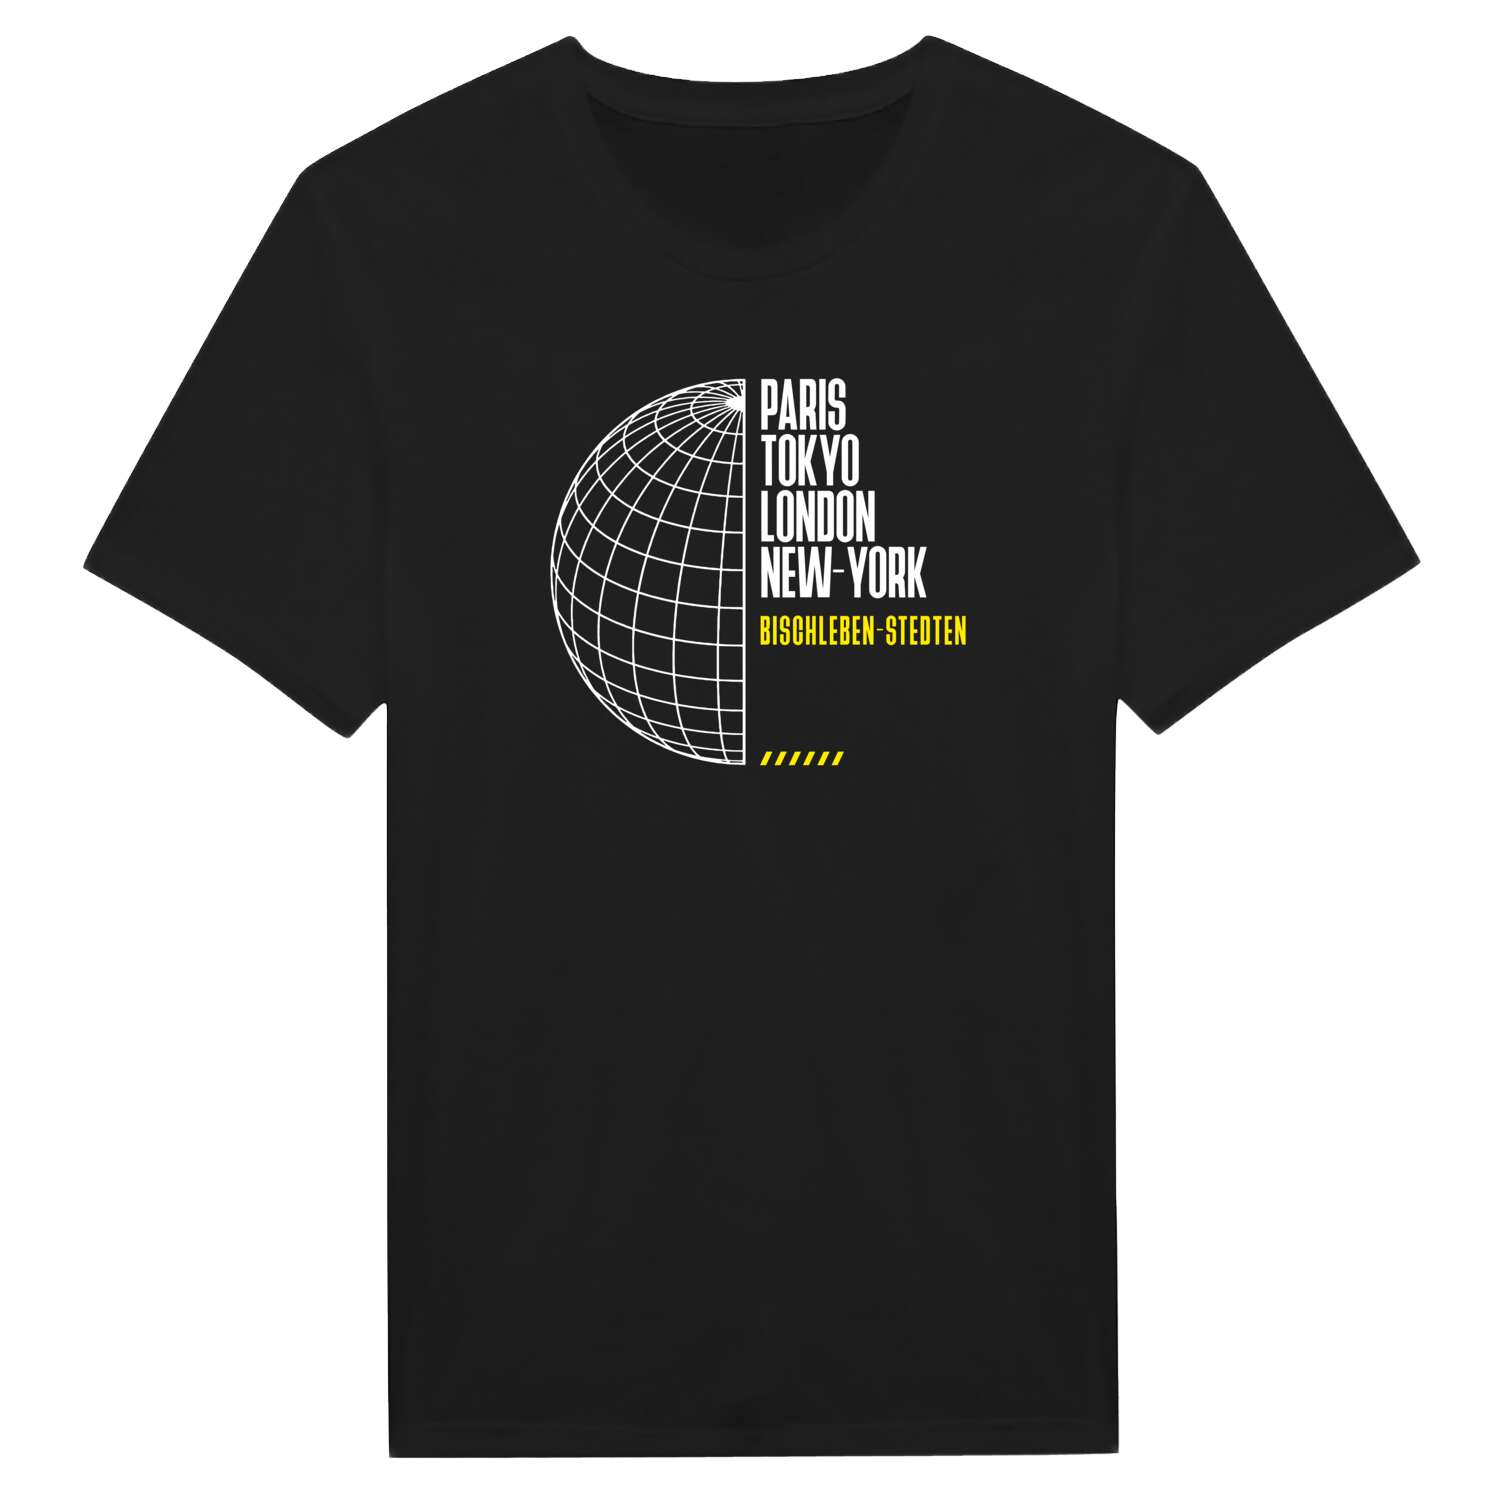 Bischleben-Stedten T-Shirt »Paris Tokyo London«